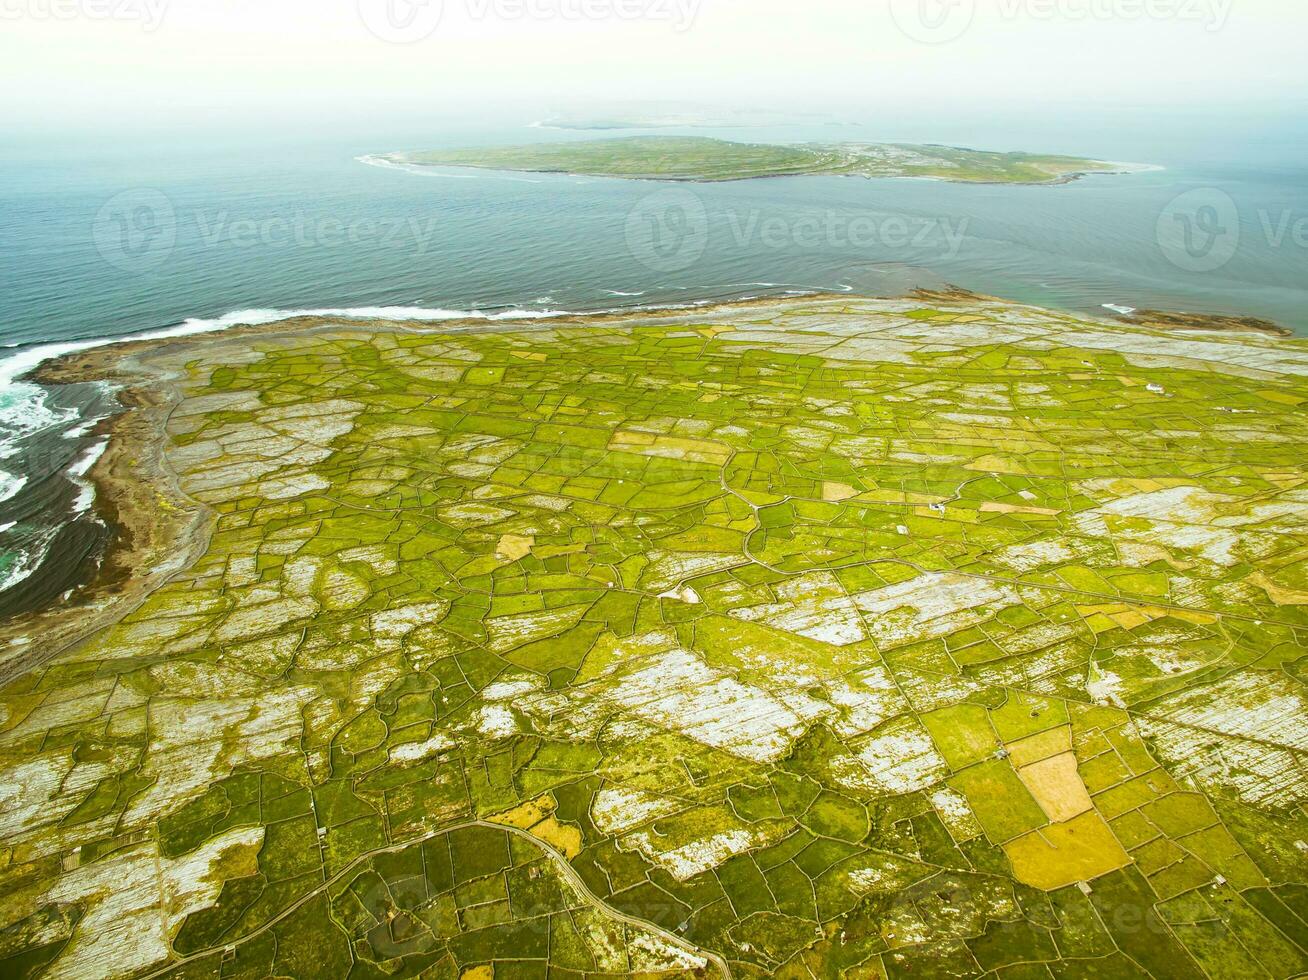 schön Antenne Landschaft von Inisher Insel, Teil von aran Inseln, Irland.inishmore, inishmaan, Inisher alle drei Inseln im einer Foto